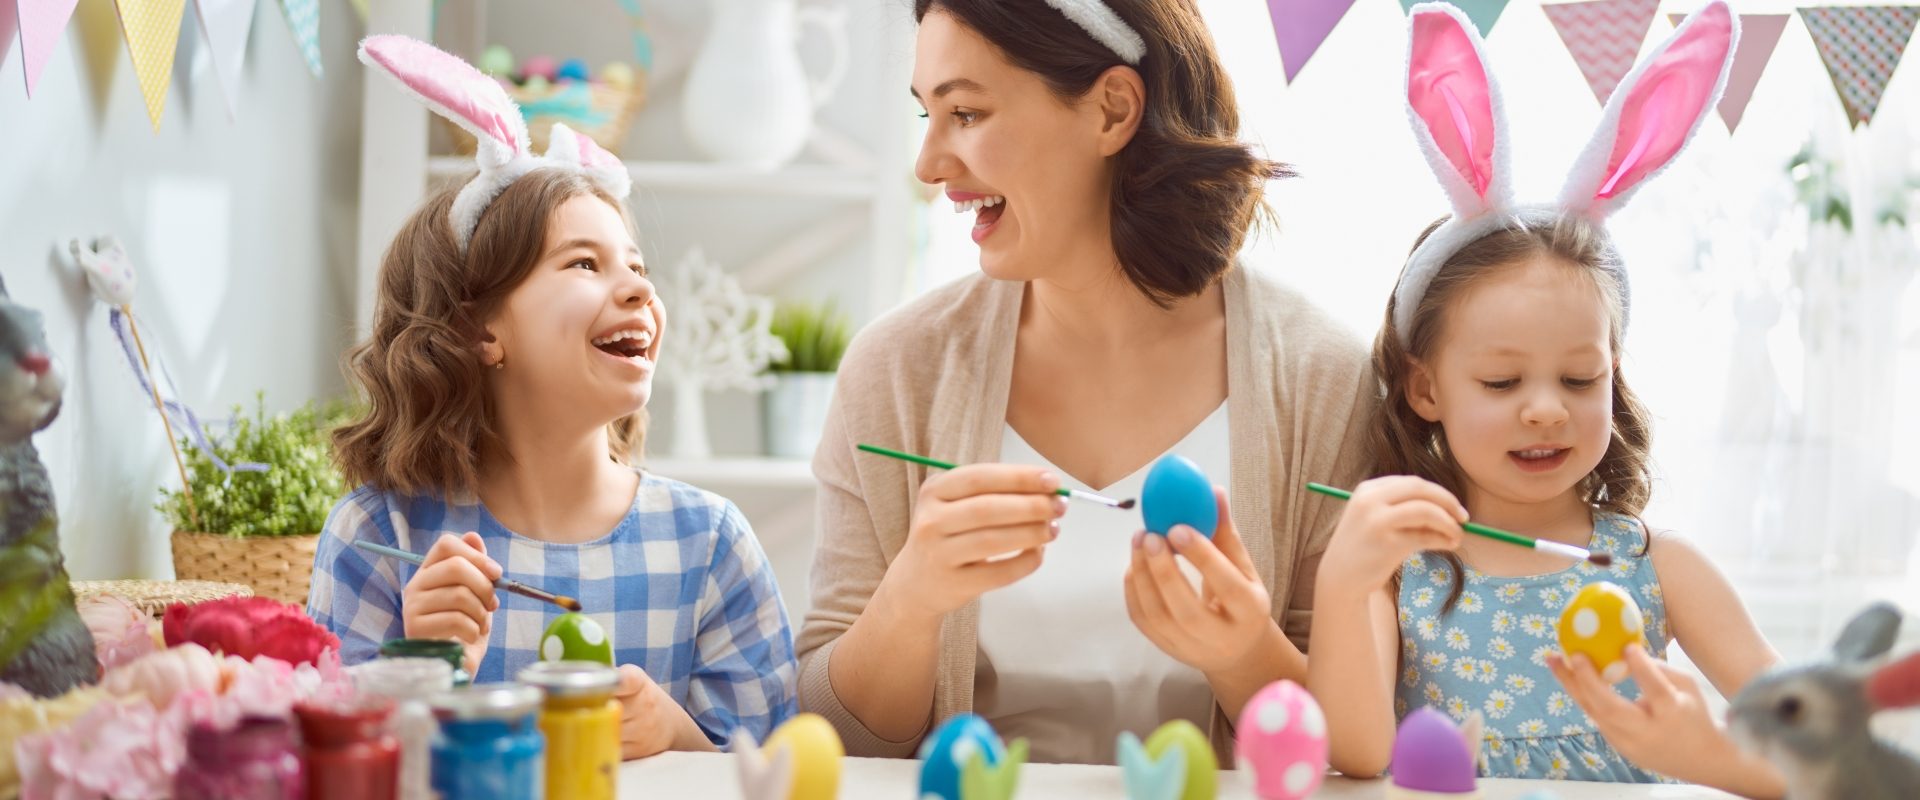 Ekologiczne pisanki wielkanocne - jak zrobić? Mama z córkami malują kraszanki na Wielkanoc.